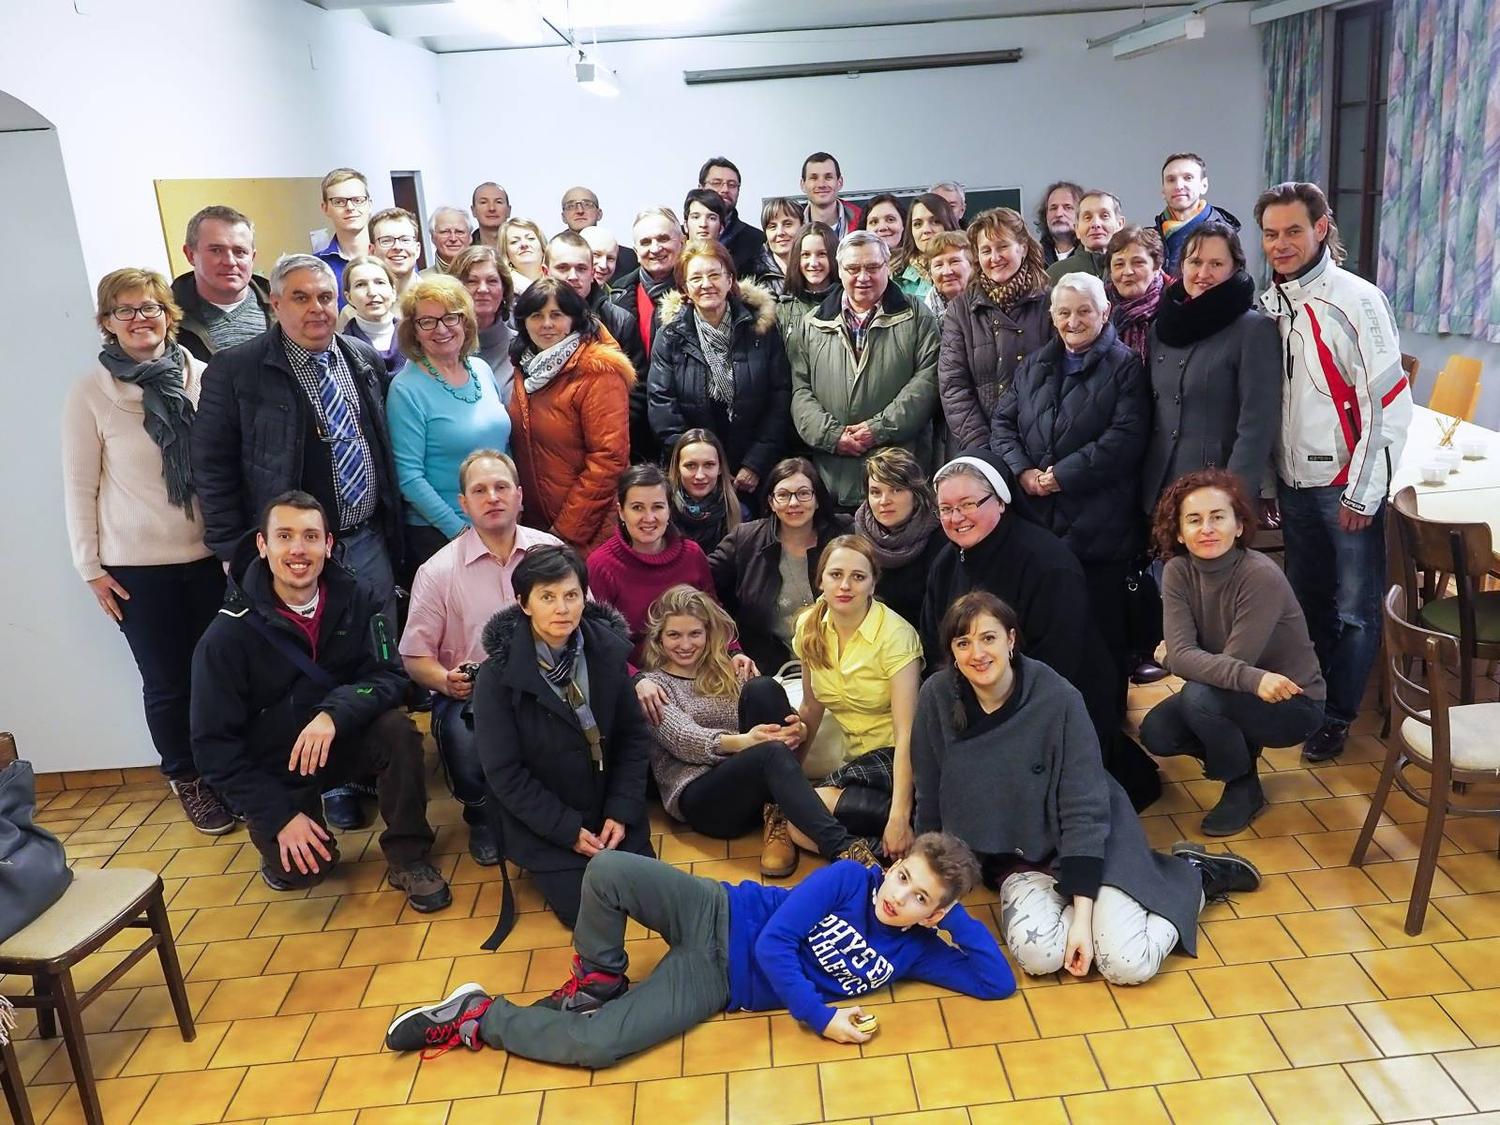 Slovenská katolícka misia Viedeň: Modlitebné a duchovné spoločenstvo, ba dokonca rodinné priateľstvá